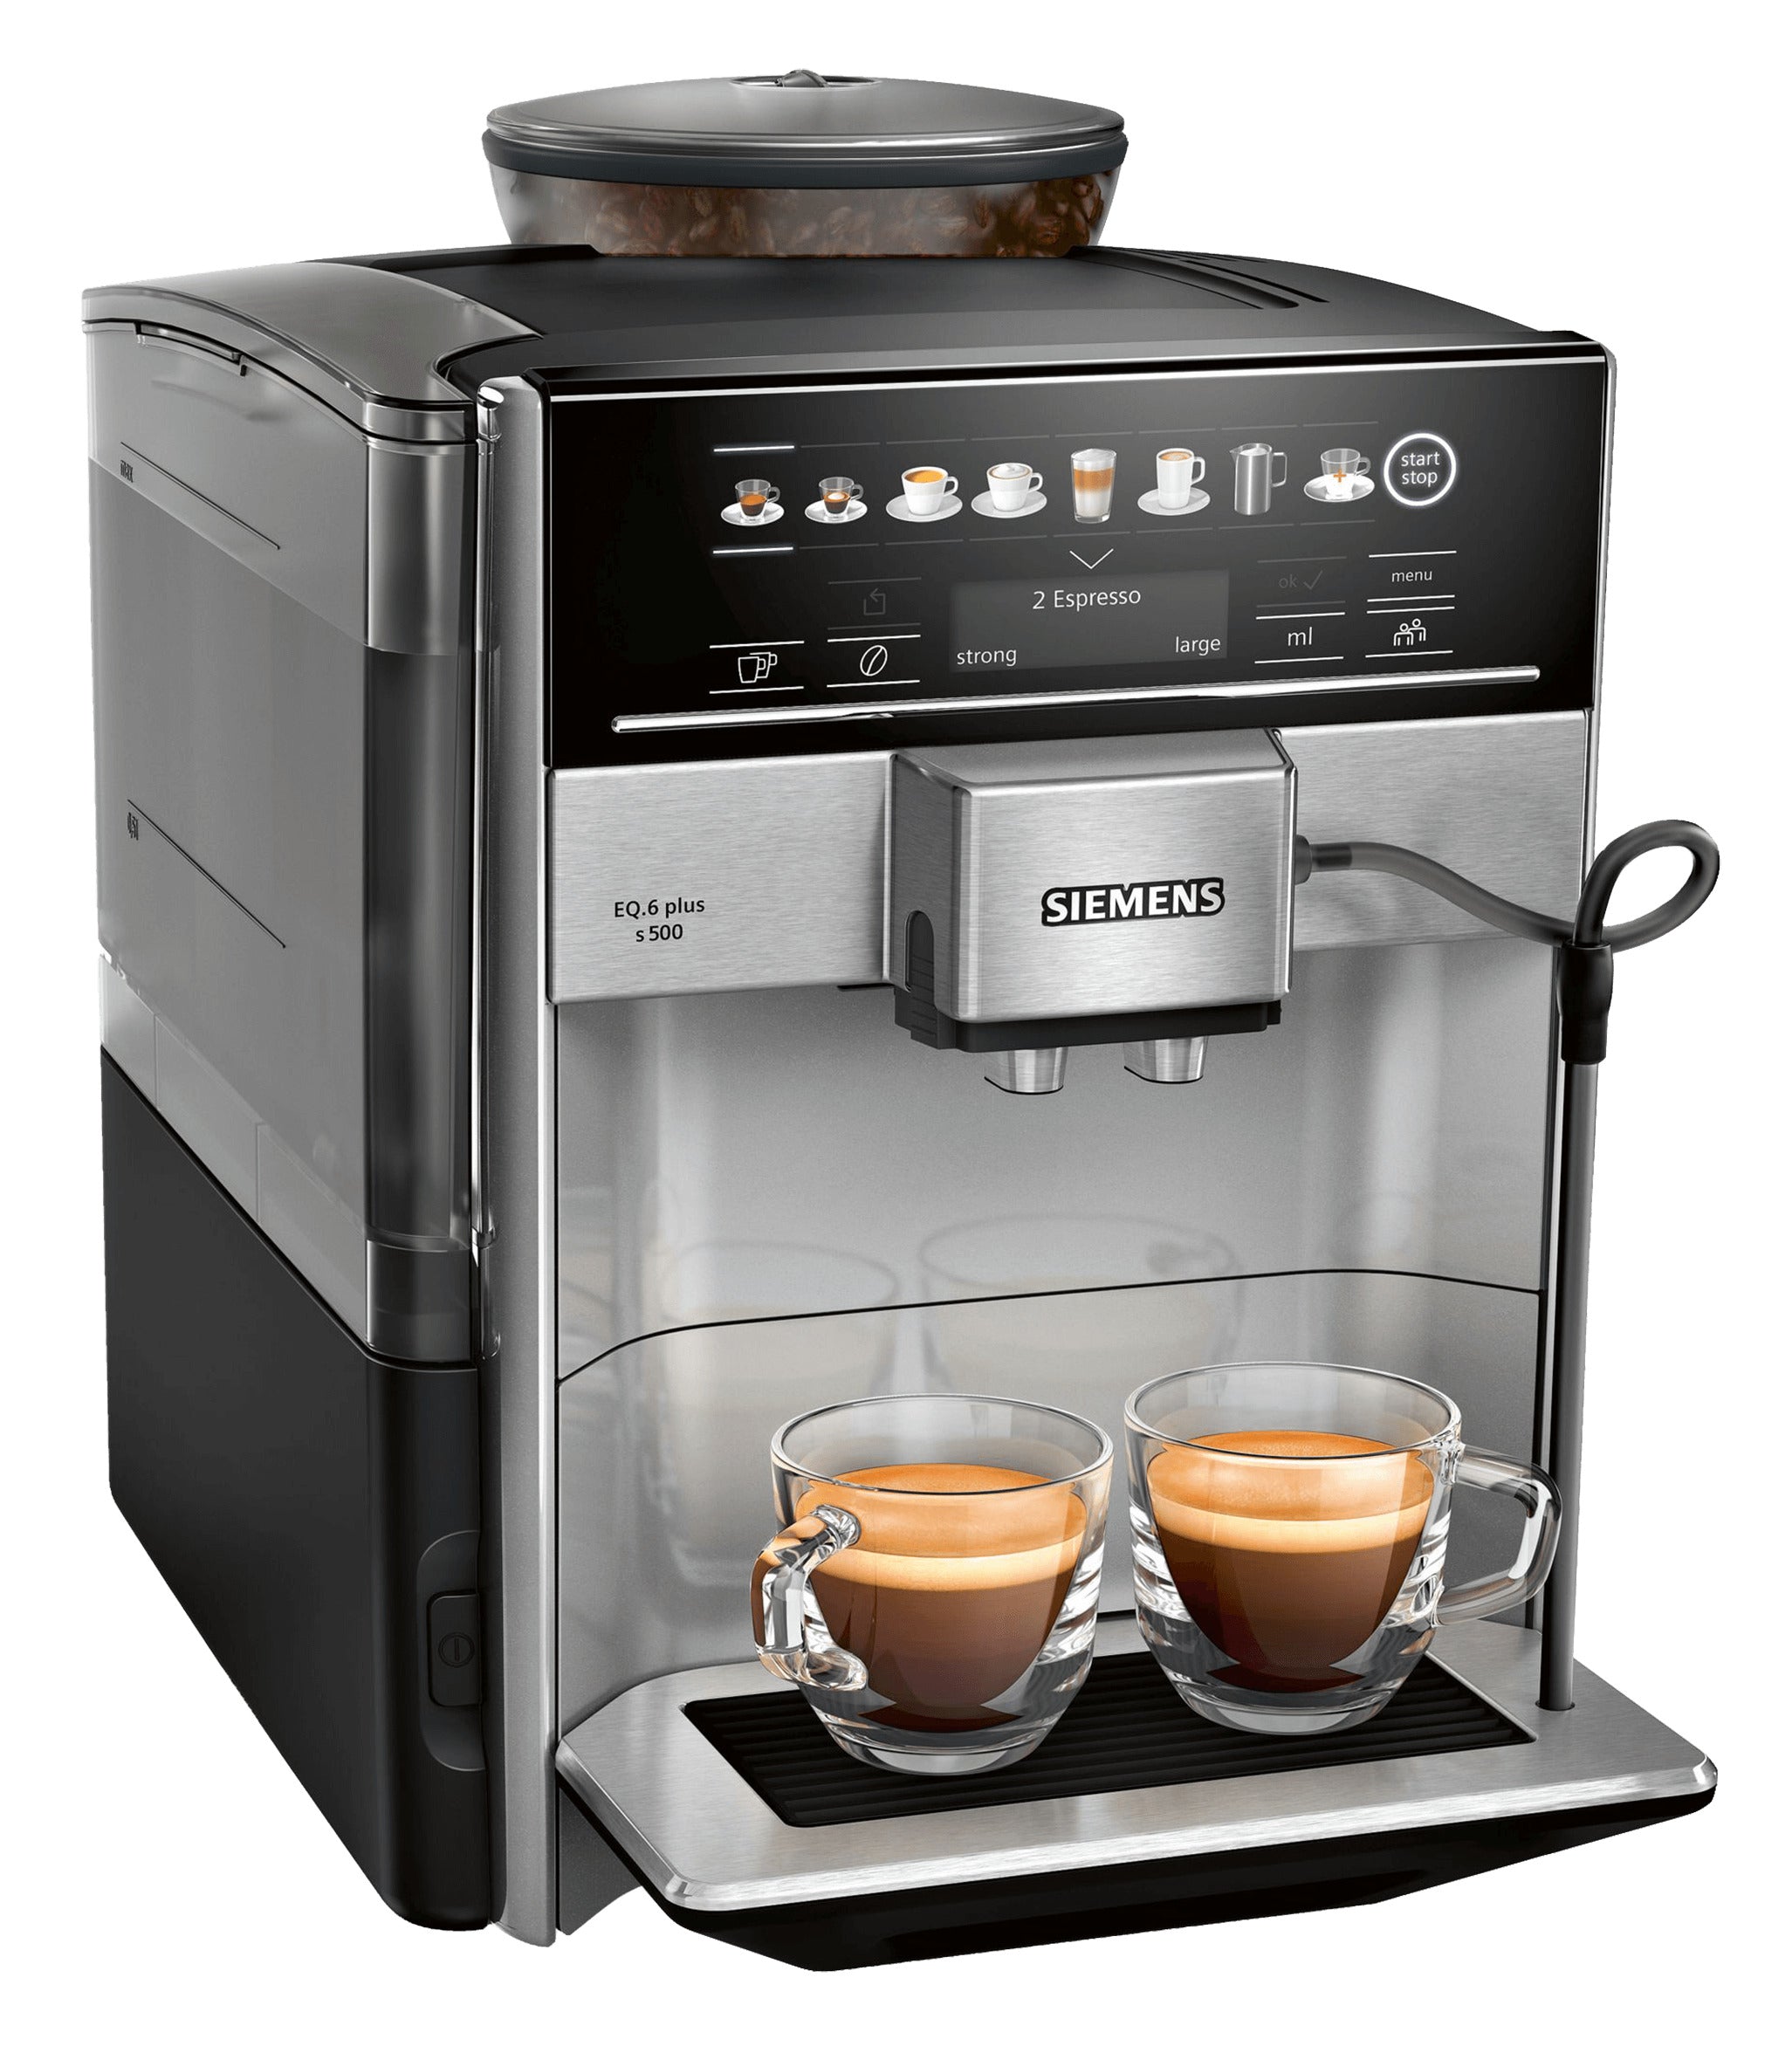 Siemens Coffee Machine Black TE655203RW